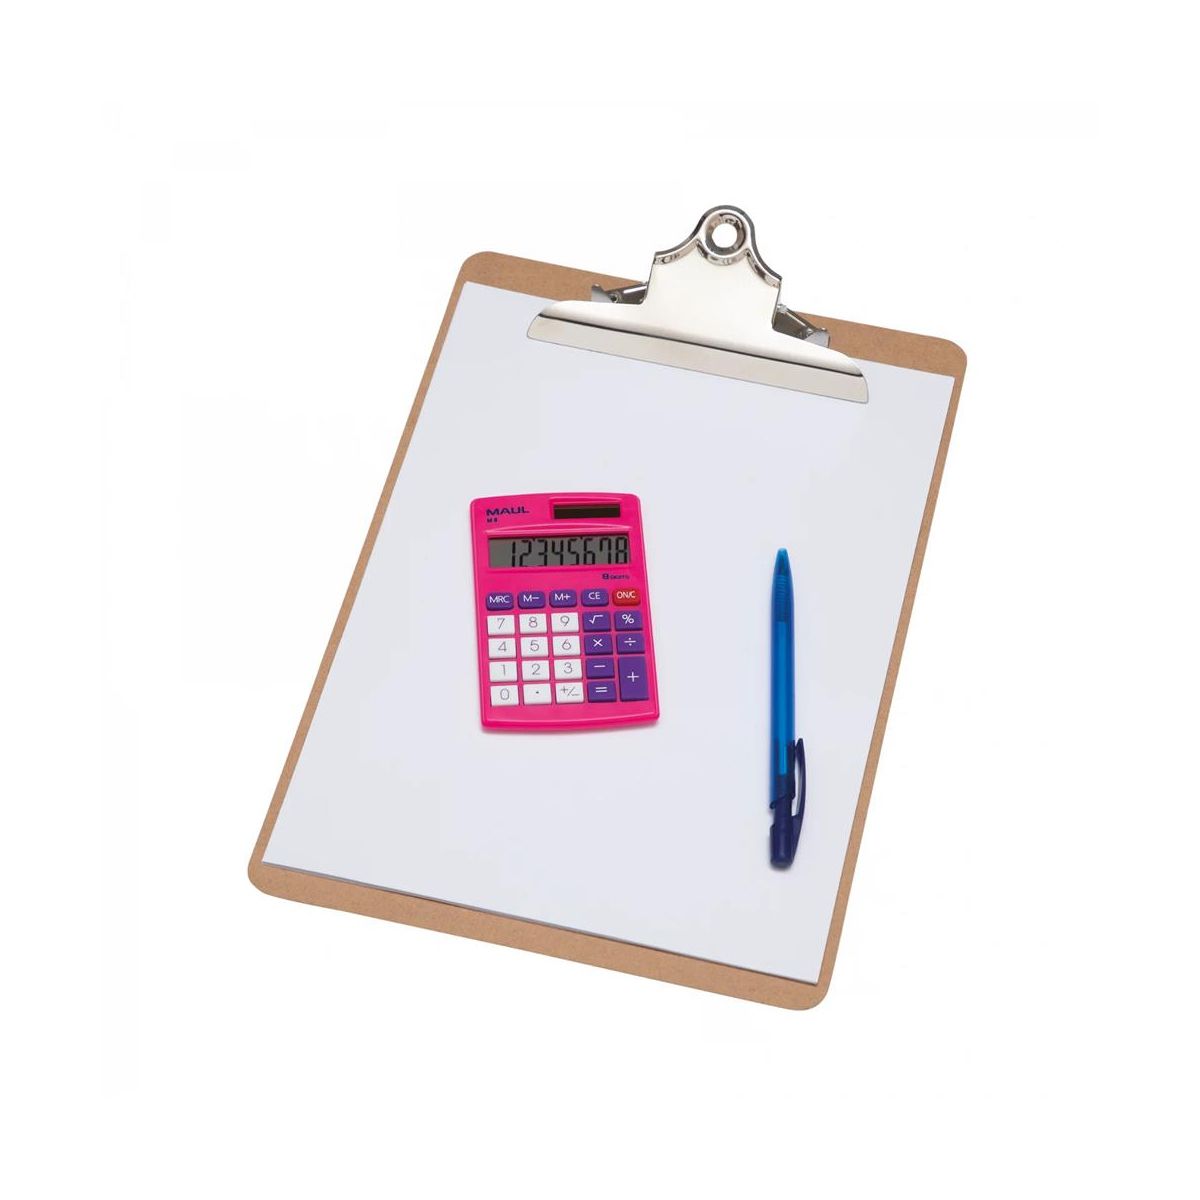 Kalkulator kieszonkowy różowy Maul (72610/22 ML)